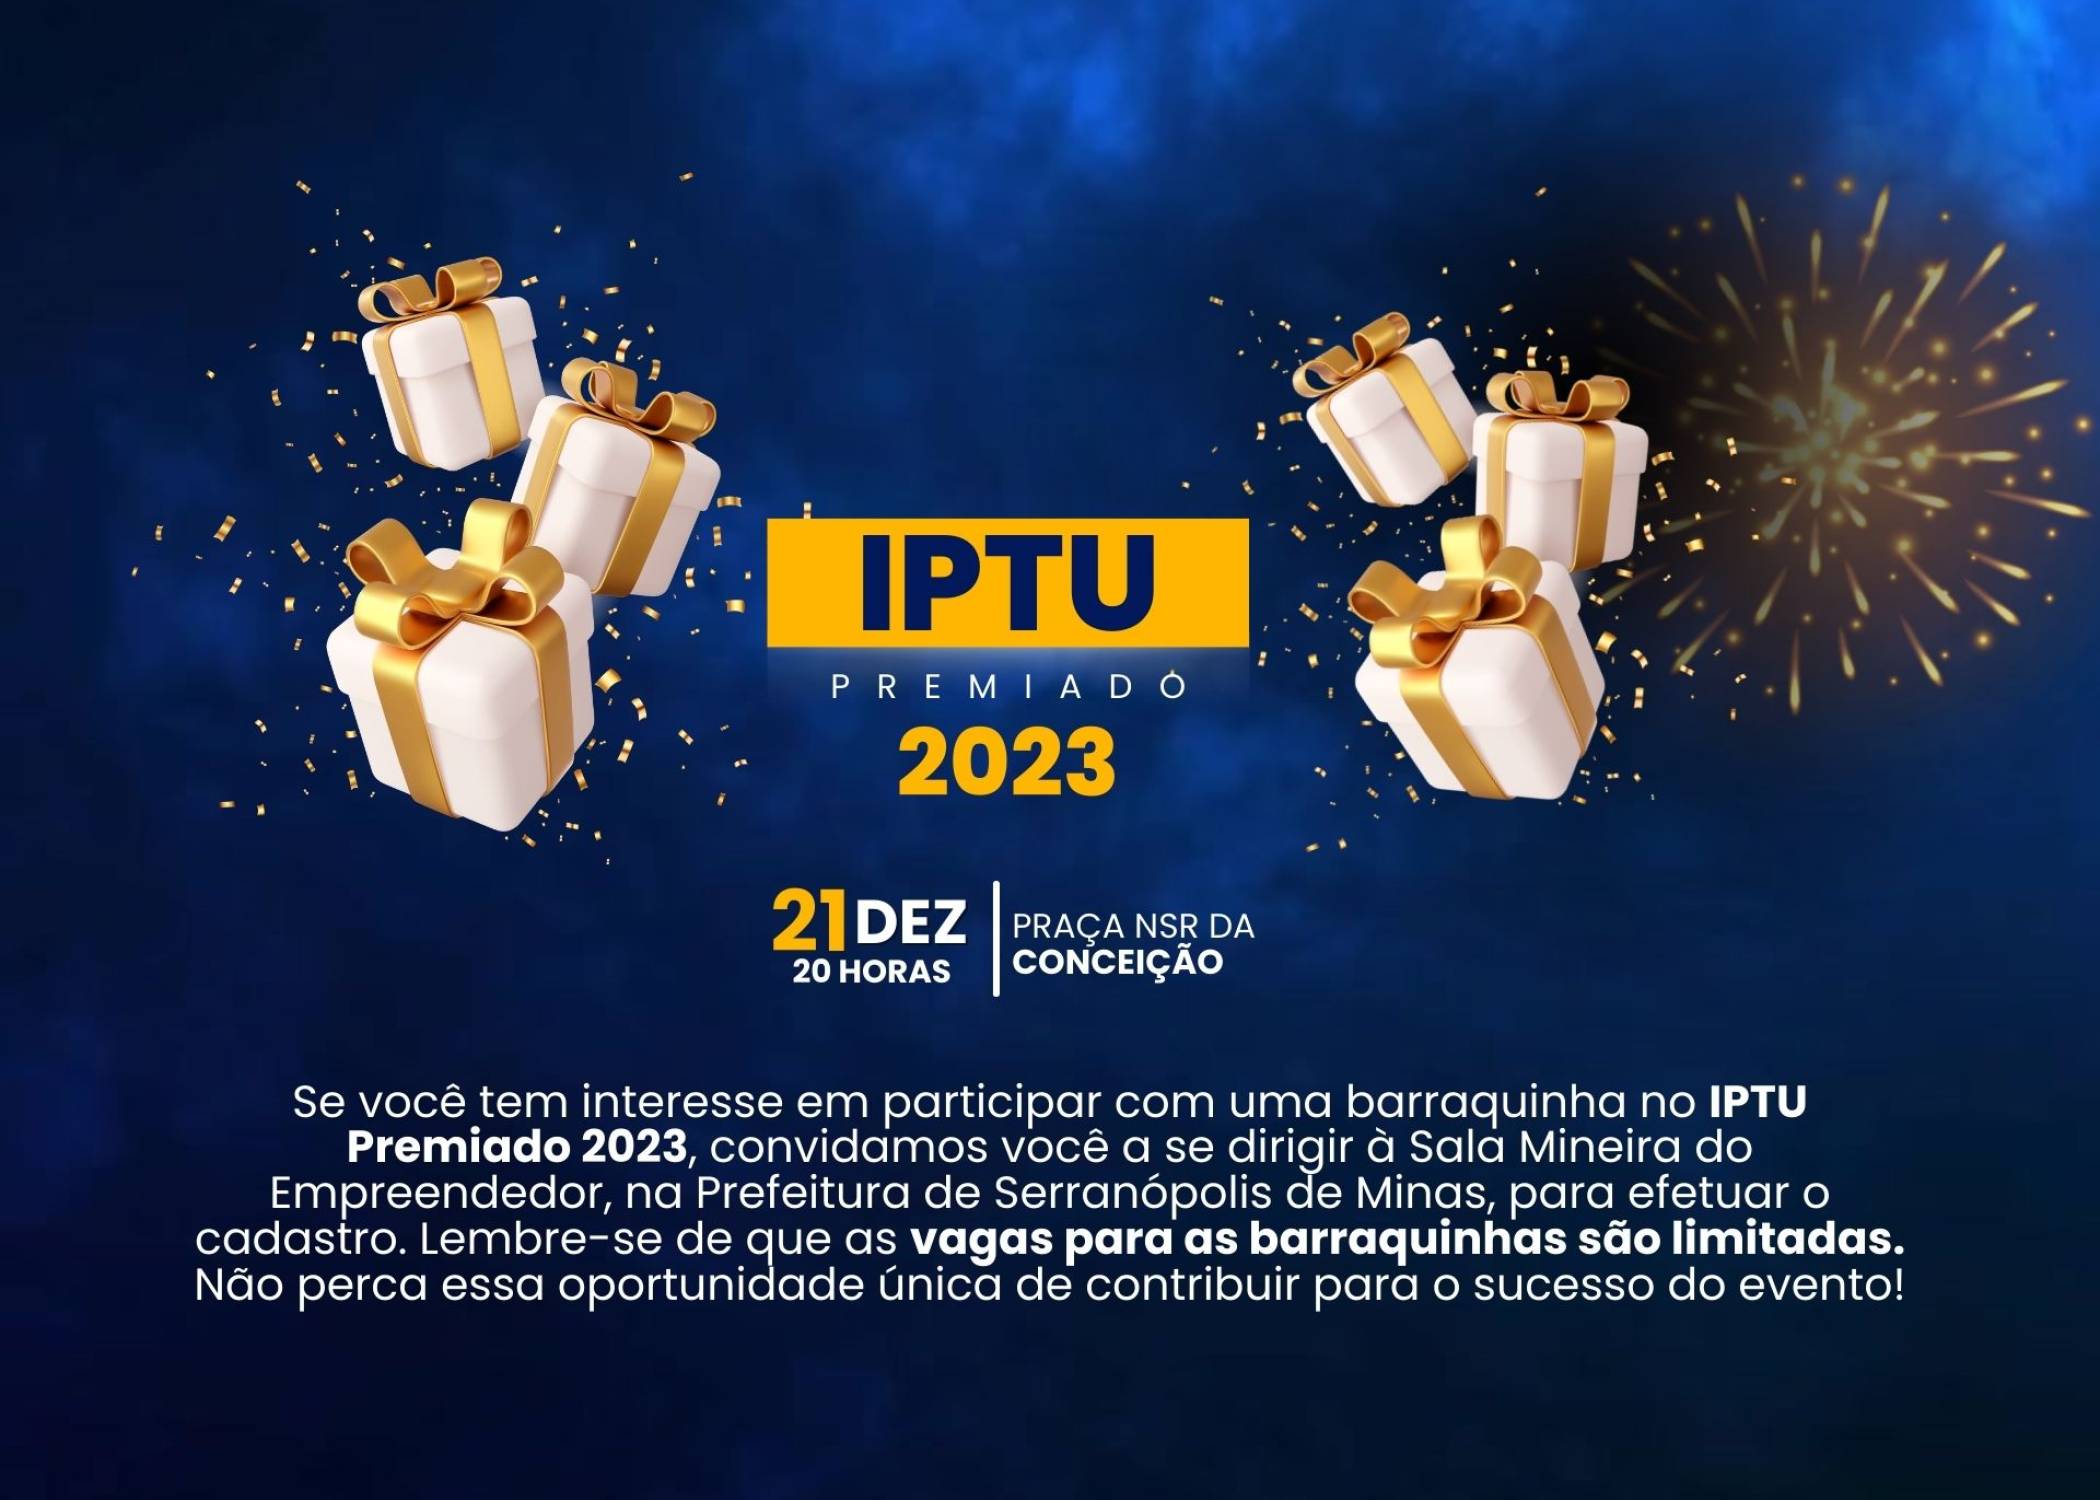 Cadastro de Barraquinhas - IPTU Premiado 2023